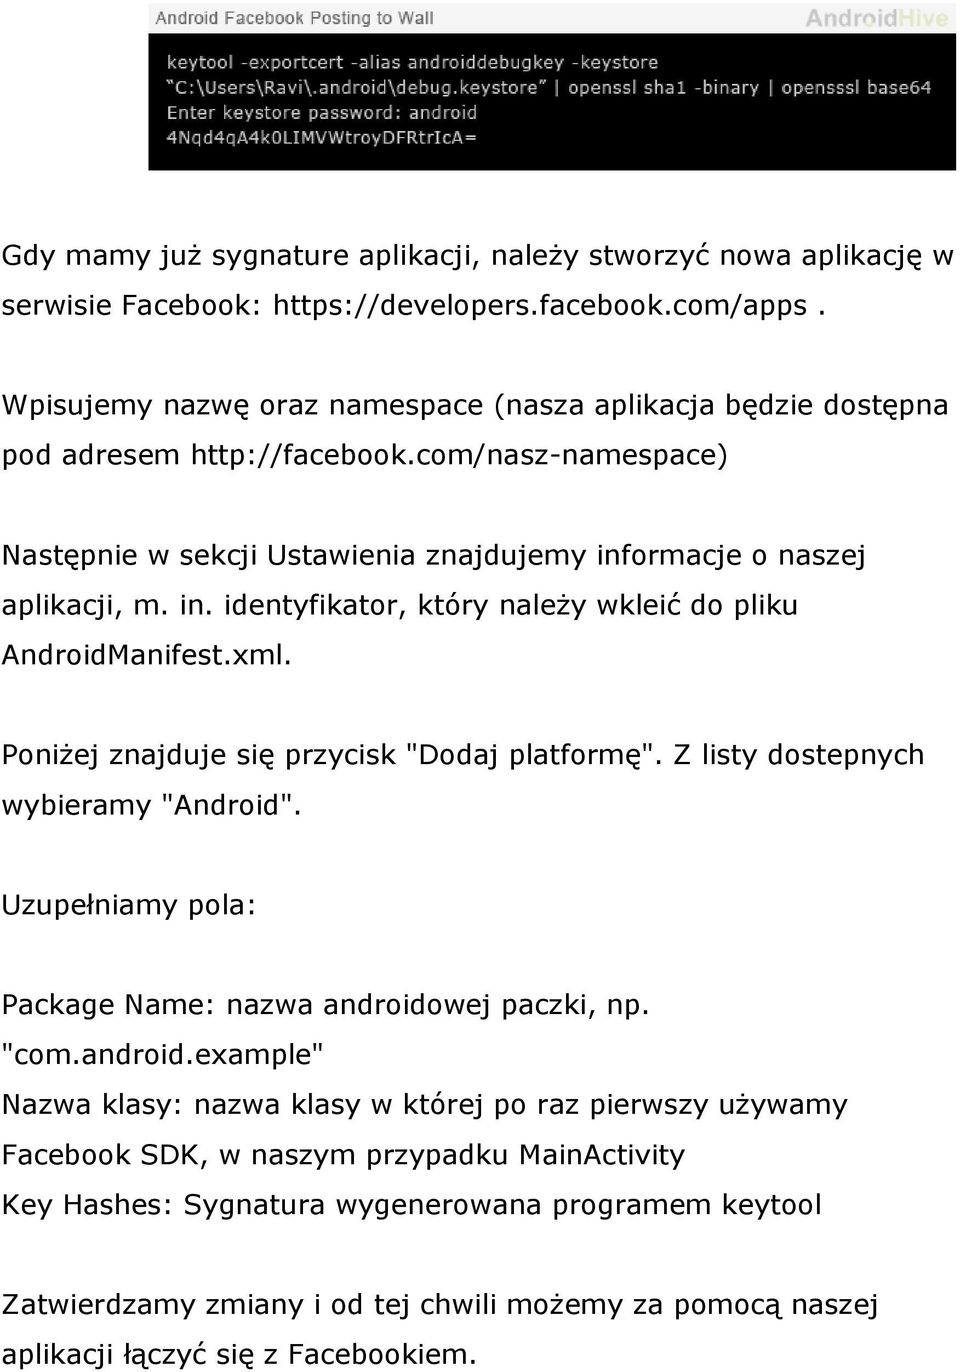 ormacje o naszej aplikacji, m. in. identyfikator, który należy wkleić do pliku AndroidManifest.xml. Poniżej znajduje się przycisk "Dodaj platformę". Z listy dostepnych wybieramy "Android".